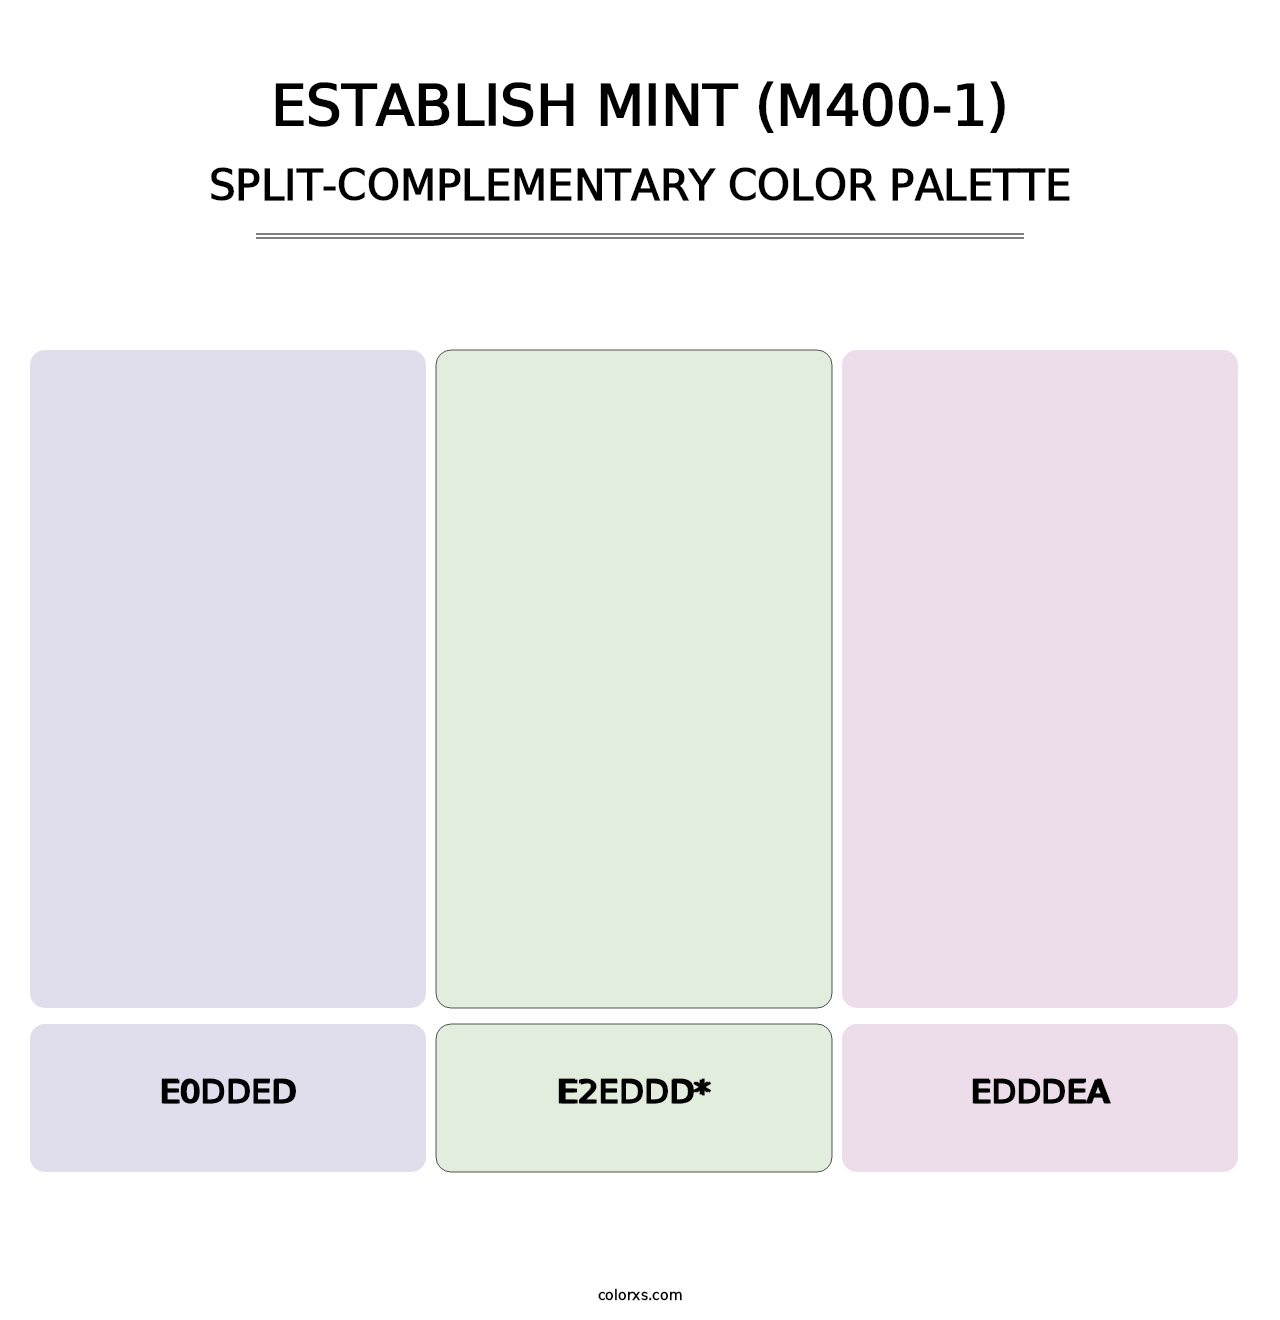 Establish Mint (M400-1) - Split-Complementary Color Palette